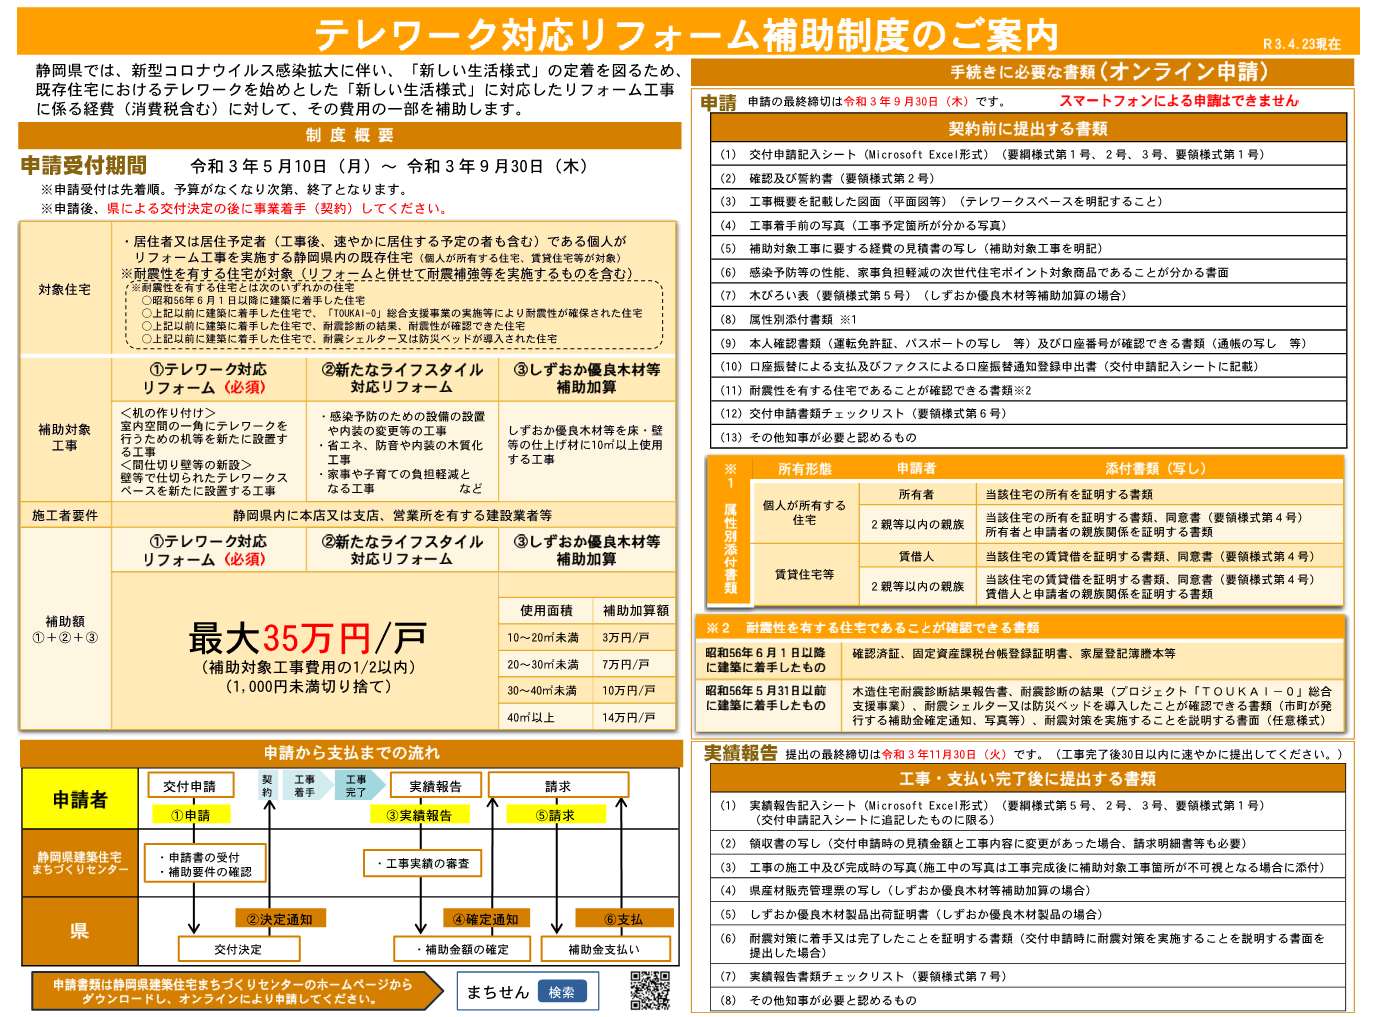 在宅勤務応援 令和３年度テレワーク対応リフォーム補助金の申請受付を５月10日から開始します 静岡県公式移住 定住情報サイト ゆとりすと静岡